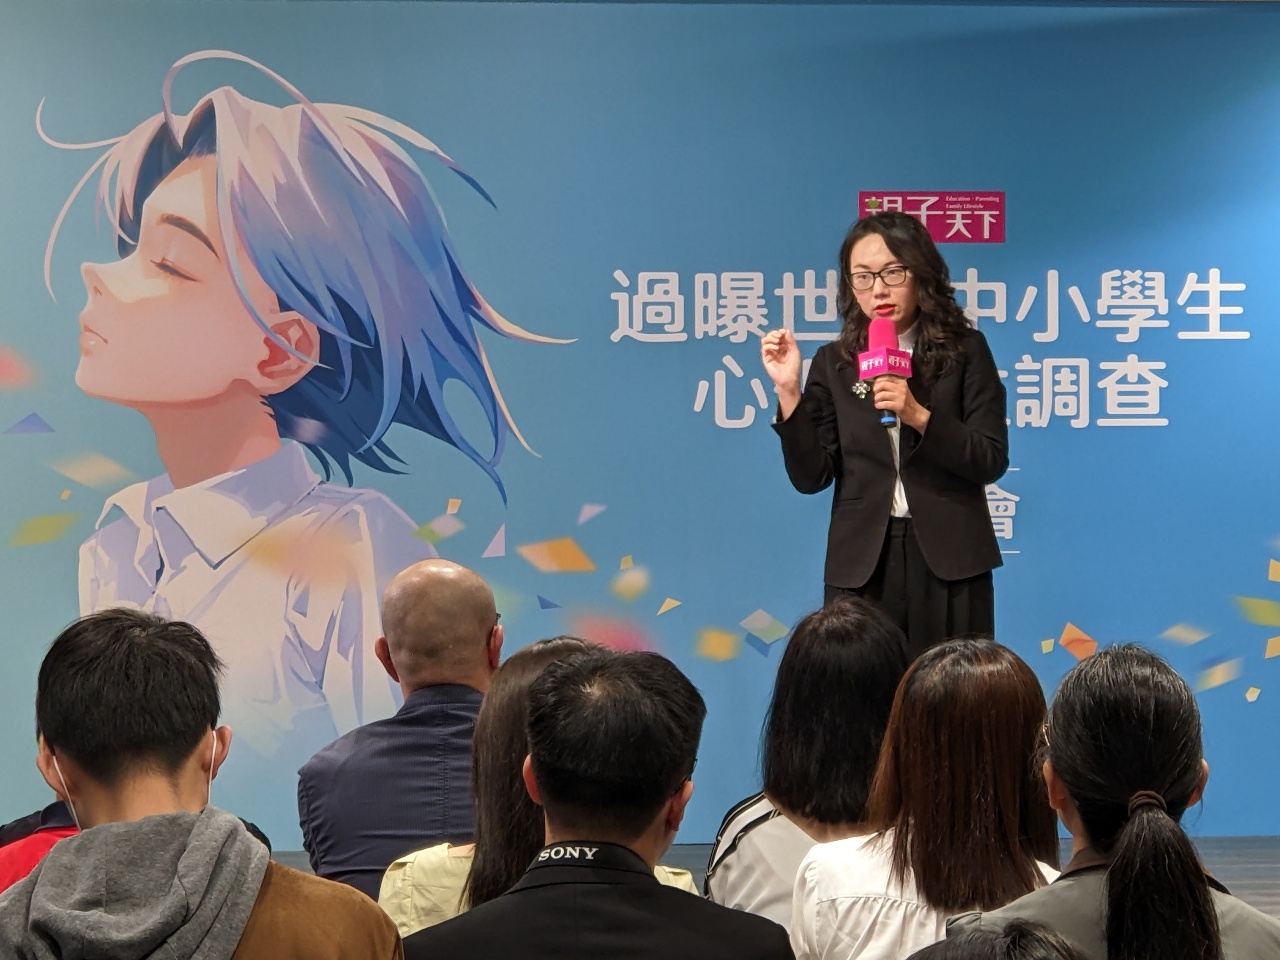 實現「健康台灣」衛福部宣示力推社會情緒學習正式納入課綱